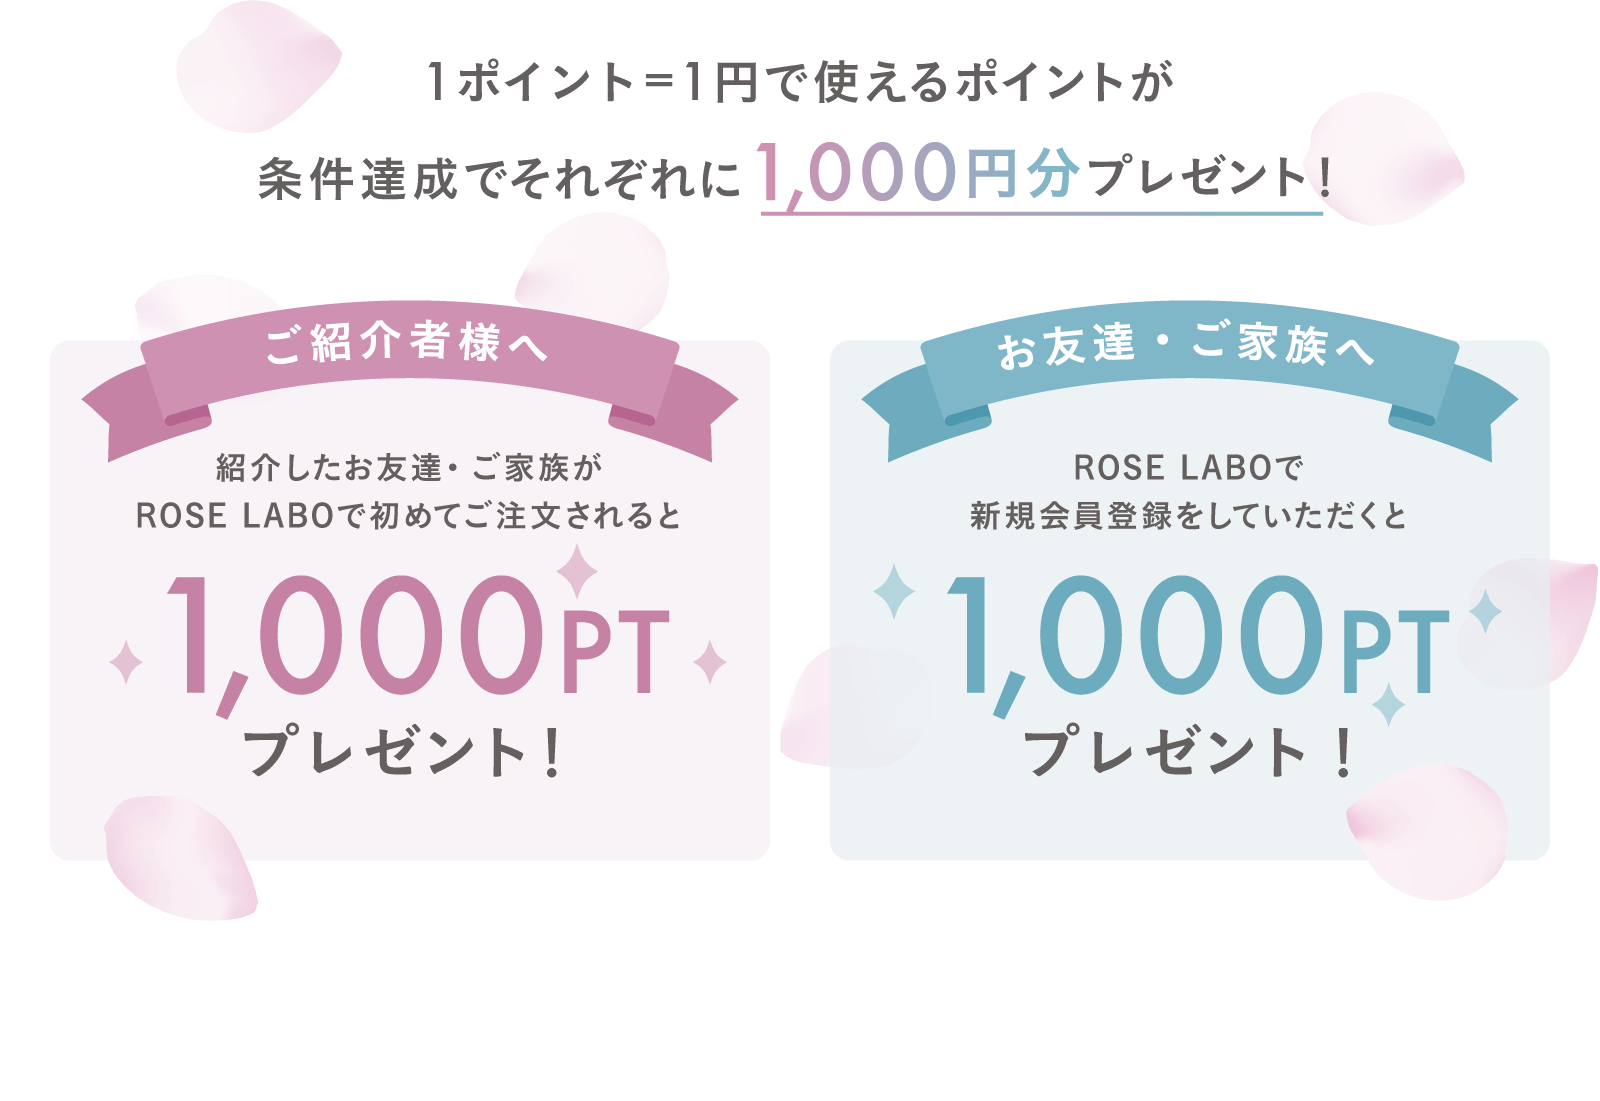 1ポイント=1円で使えるポイントが条件達成でそれぞれに1,000円分プレゼント！